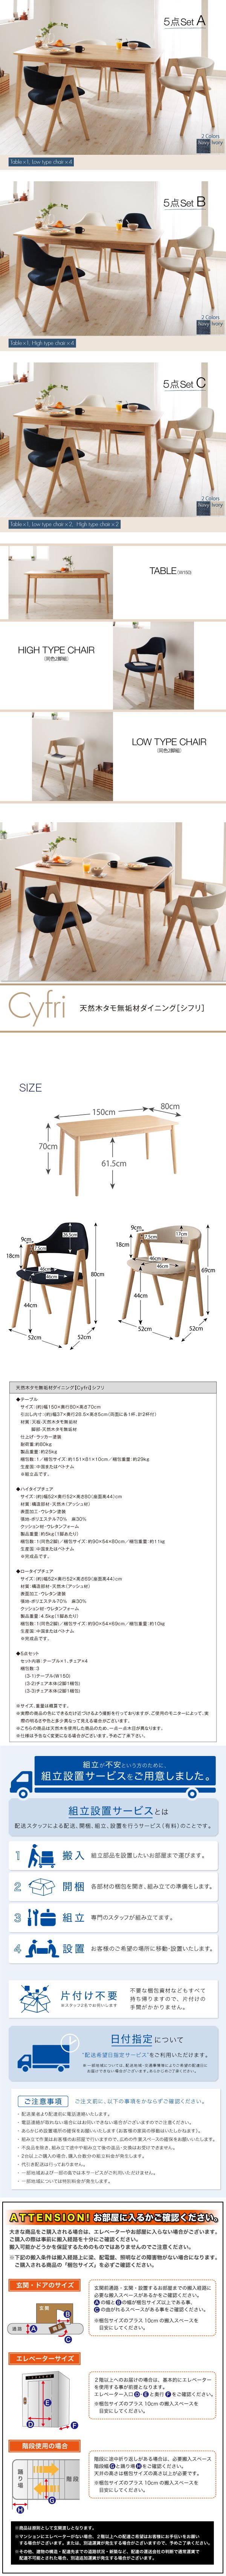 【在庫】ダイニングテーブル W150 (単品) 天然木タモ無垢材ダイニング Cyfri シフリ 4人用